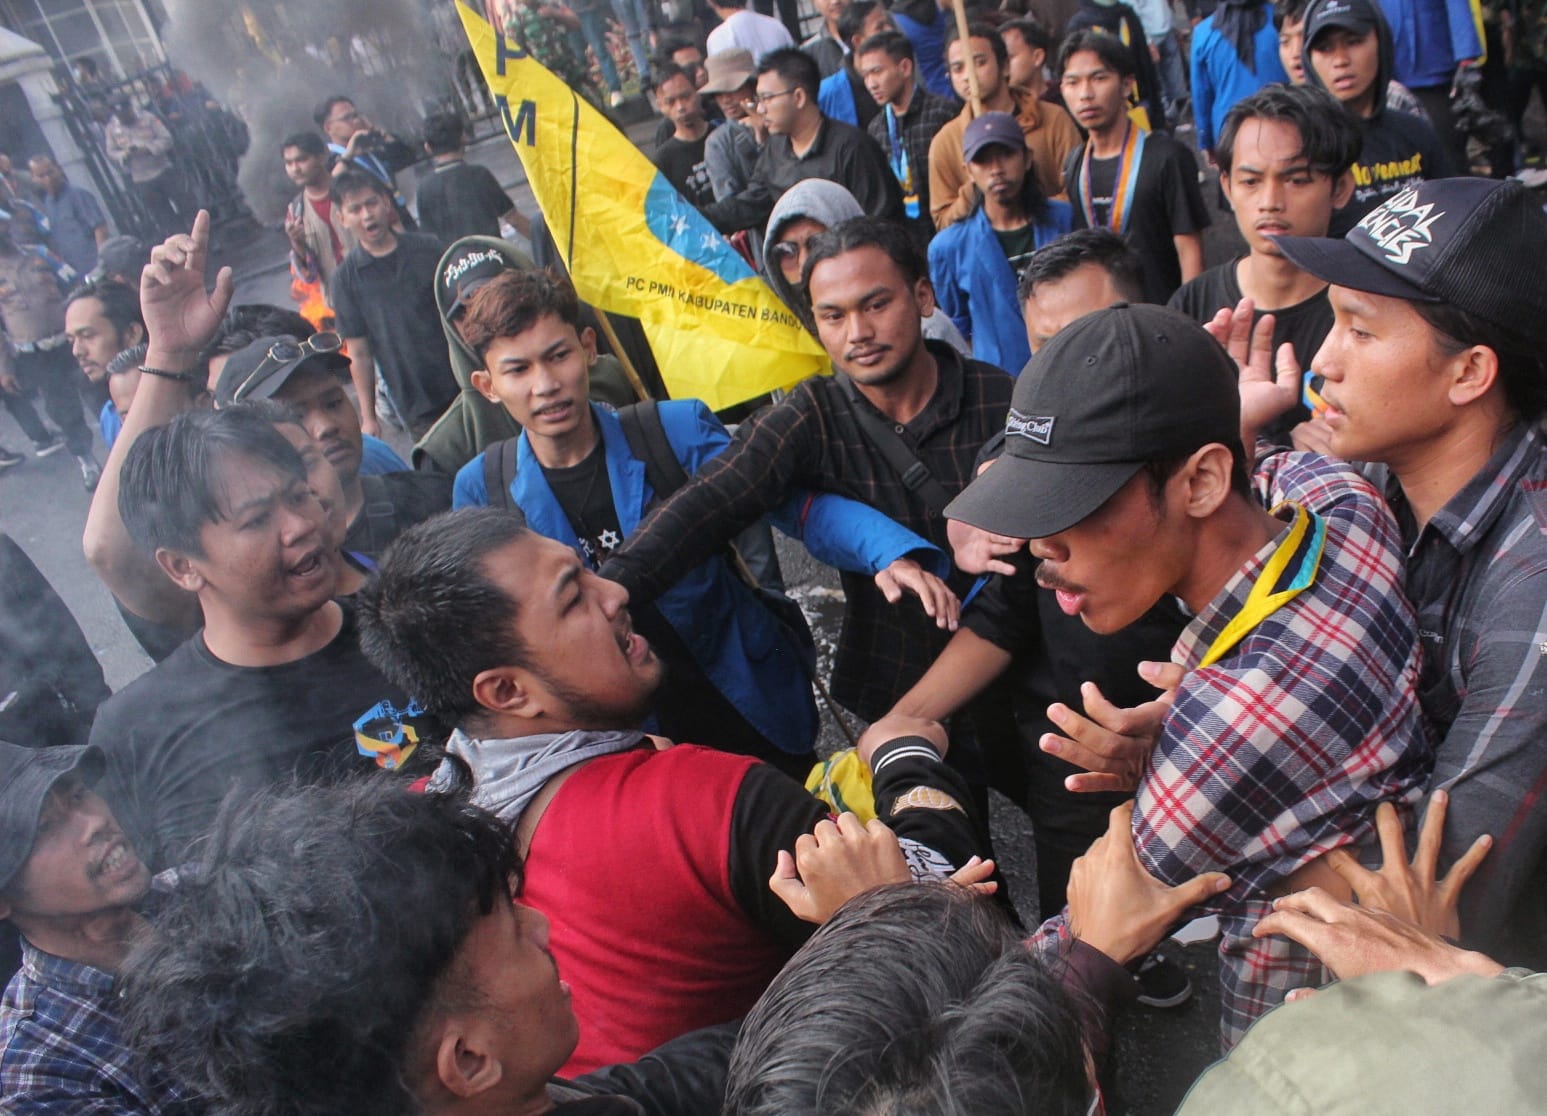 Mahasiswa Lawan Mahasiswa, Bentrok Aksi Demo BBM di Bandung